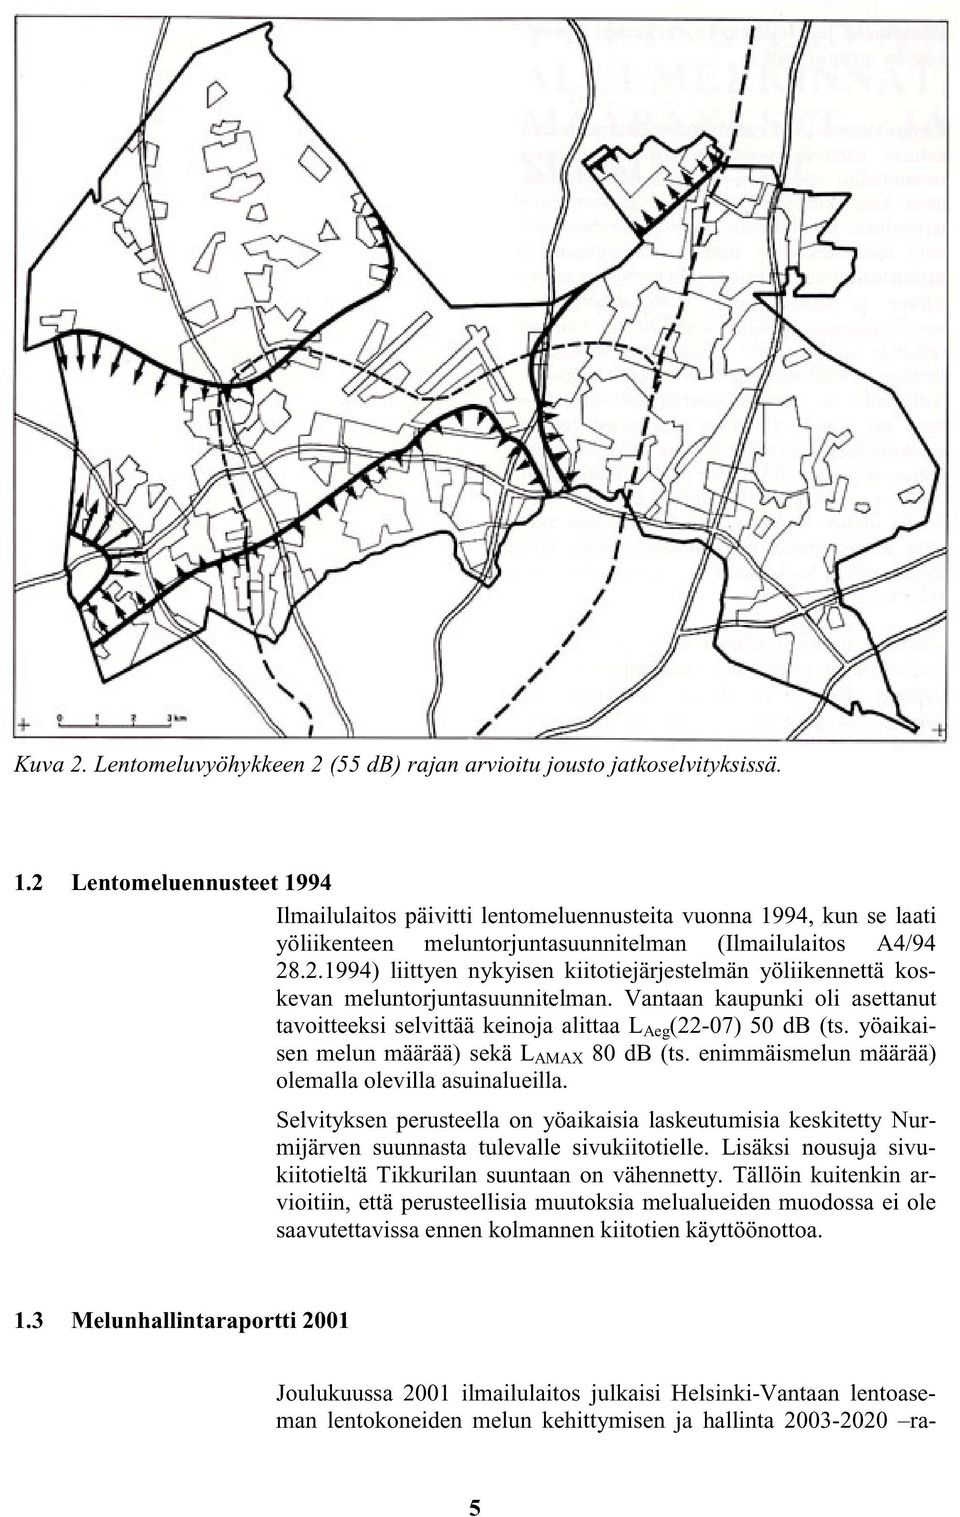 Vantaan kaupunki oli asettanut tavoitteeksi selvittää keinoja alittaa L Aeg (22-07) 50 db (ts. yöaikaisen melun määrää) sekä L AMAX 80 db (ts. enimmäismelun määrää) olemalla olevilla asuinalueilla.